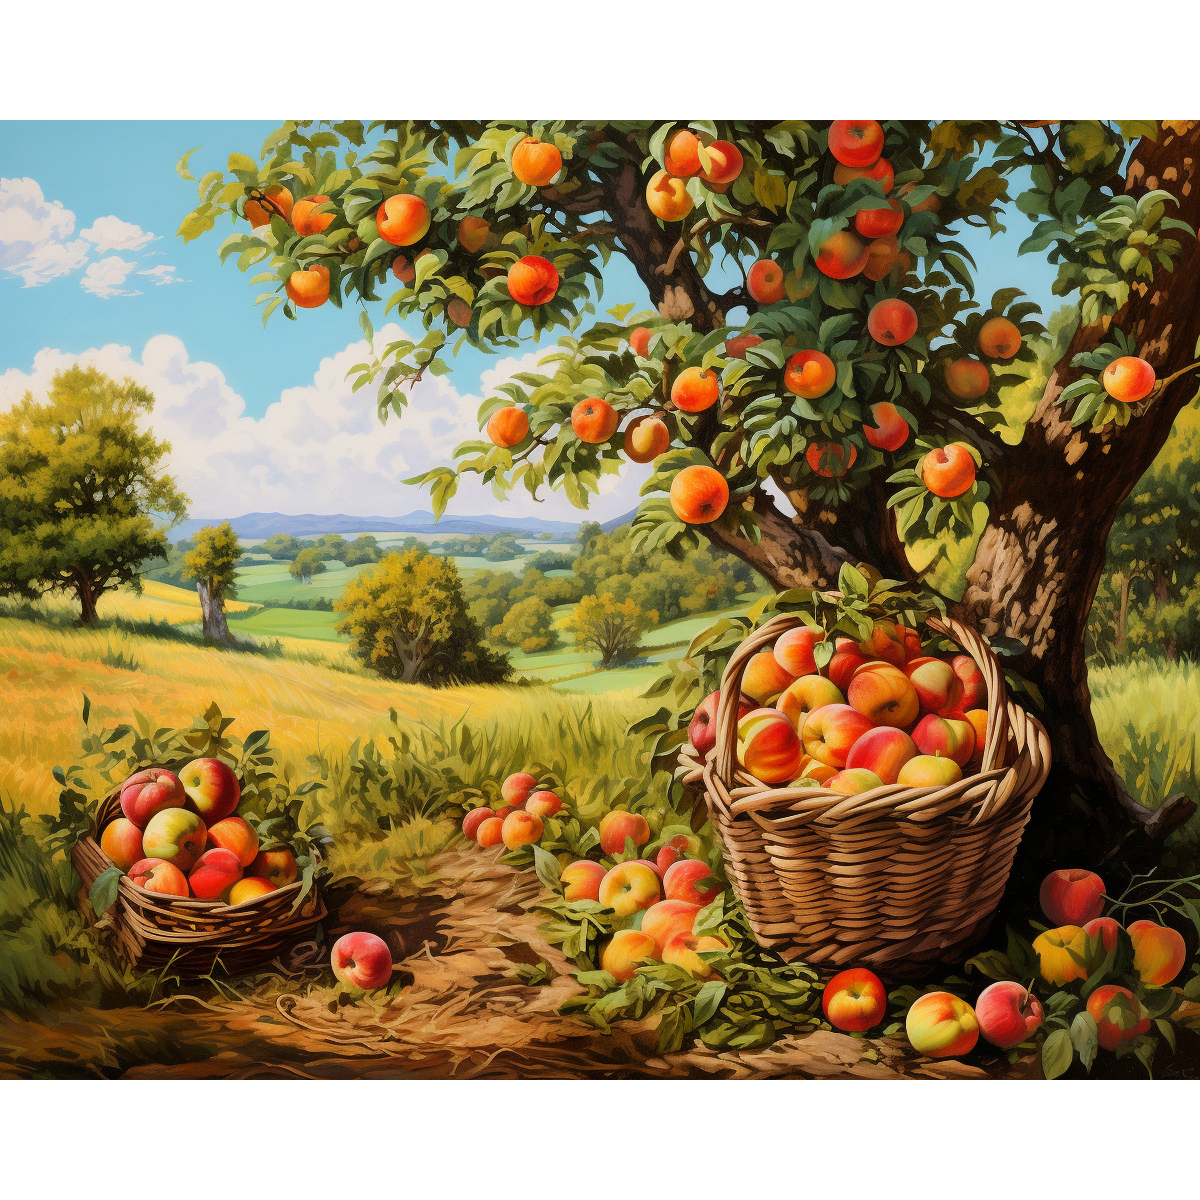 Huerto de manzanas